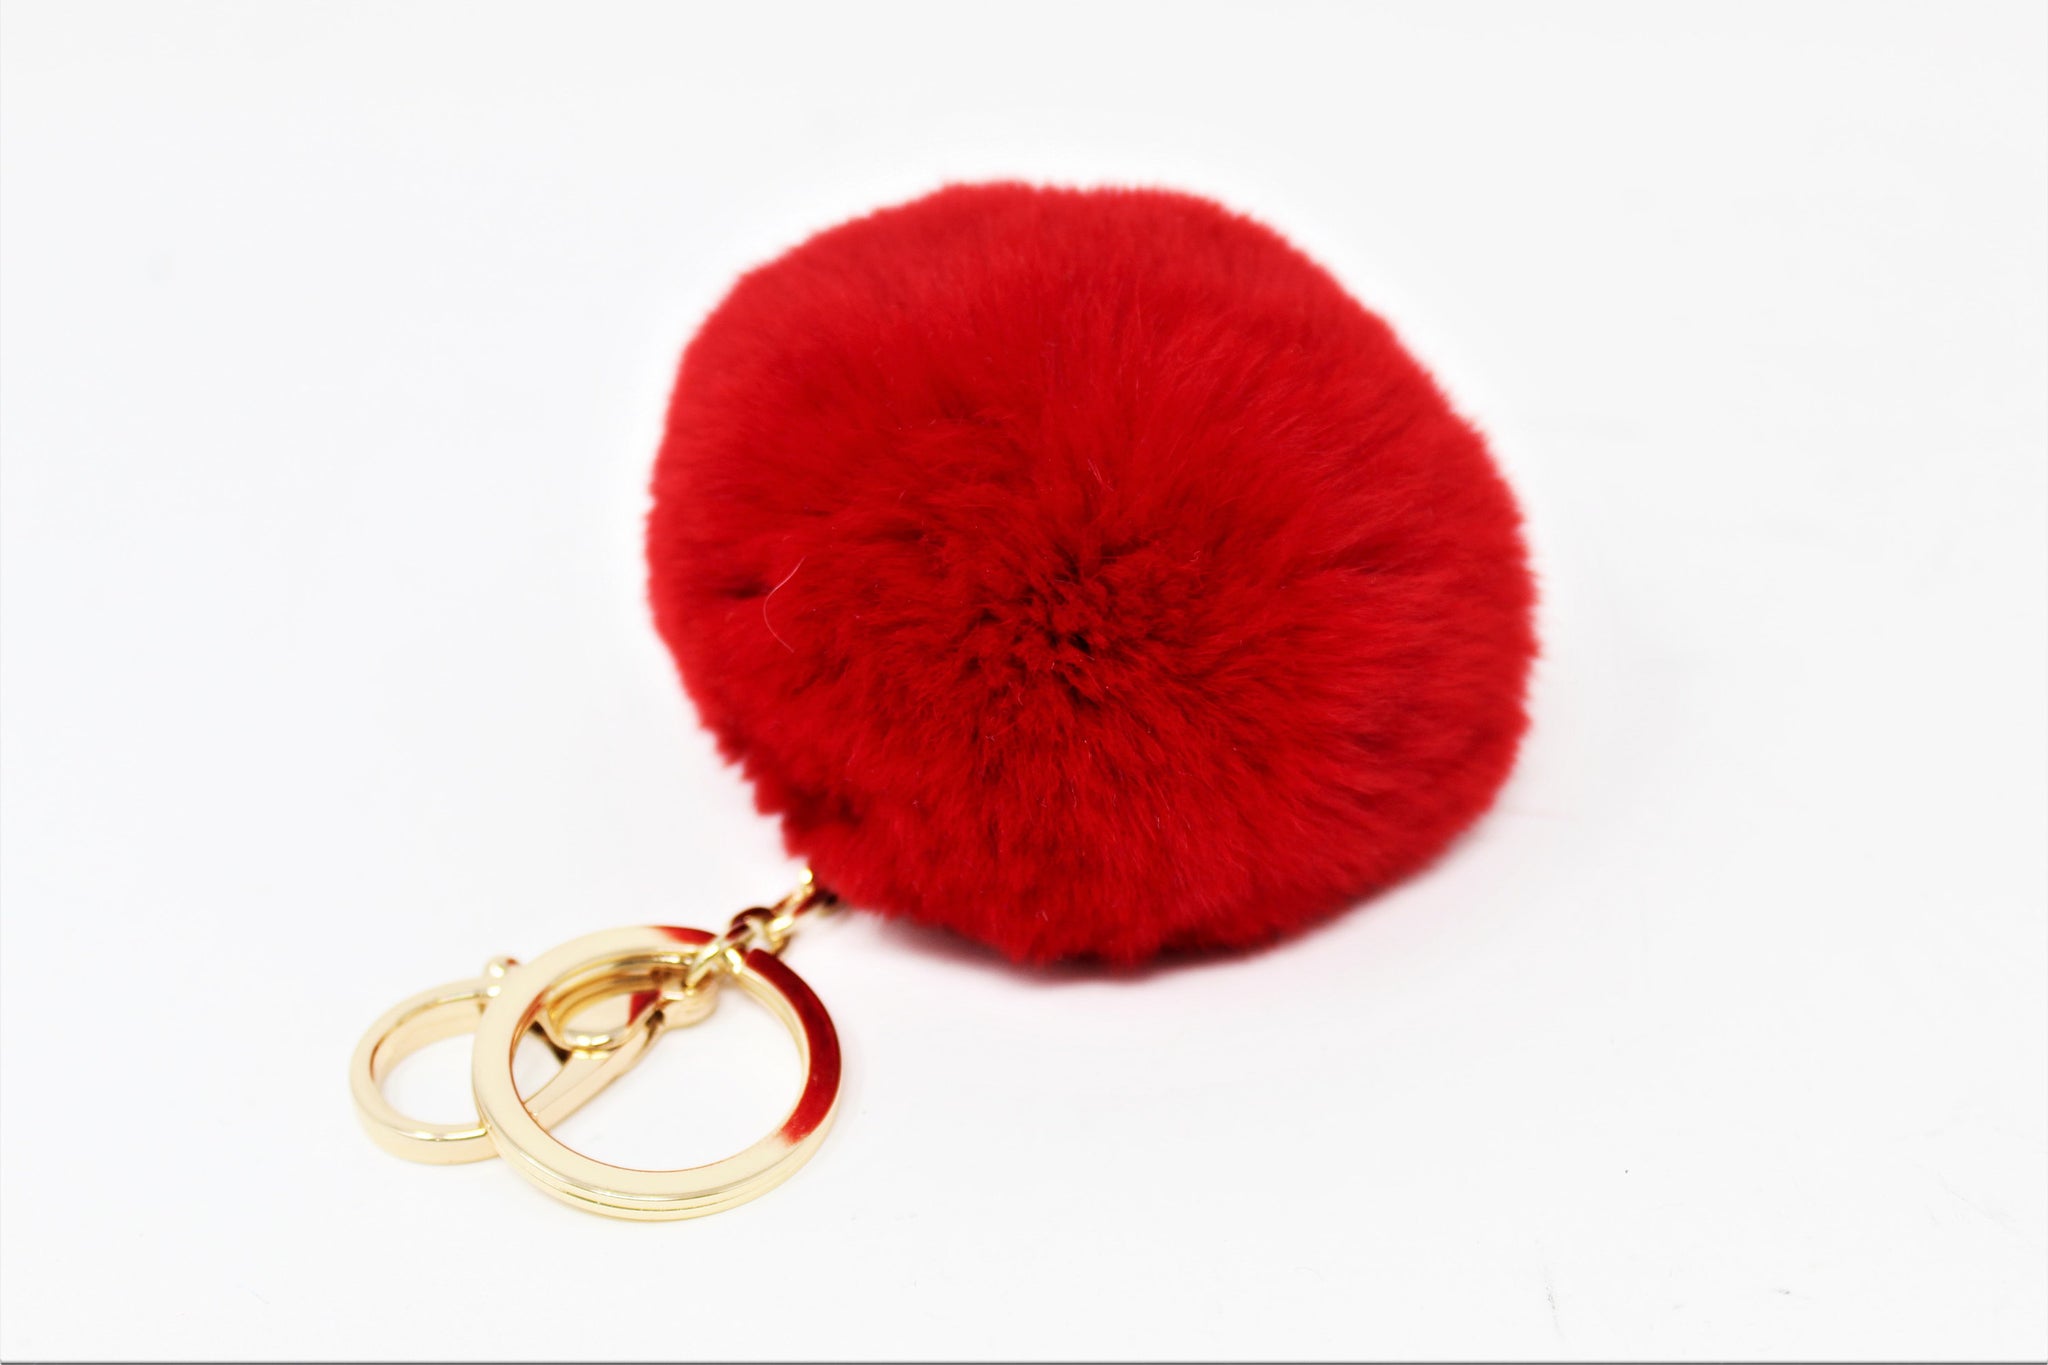 Pom Pom Key-chain Artificial Hanging, Fur Ball Keychain